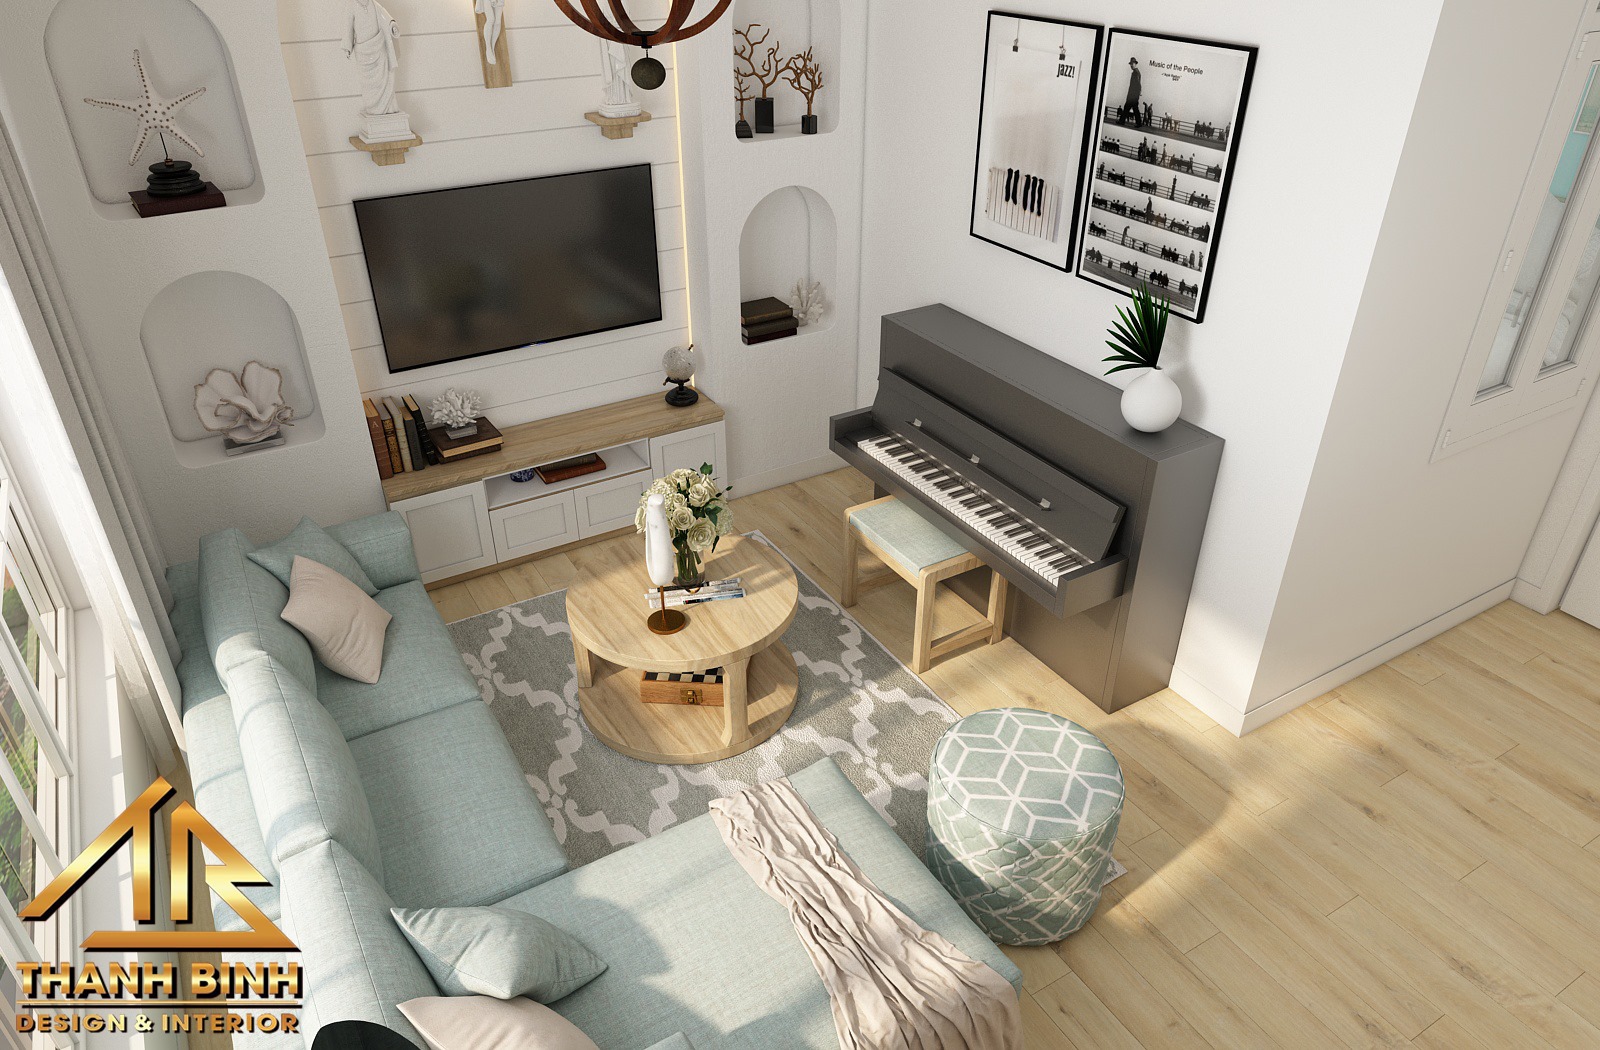 3D Interior Model Living room 0412 Scene 3dsmax